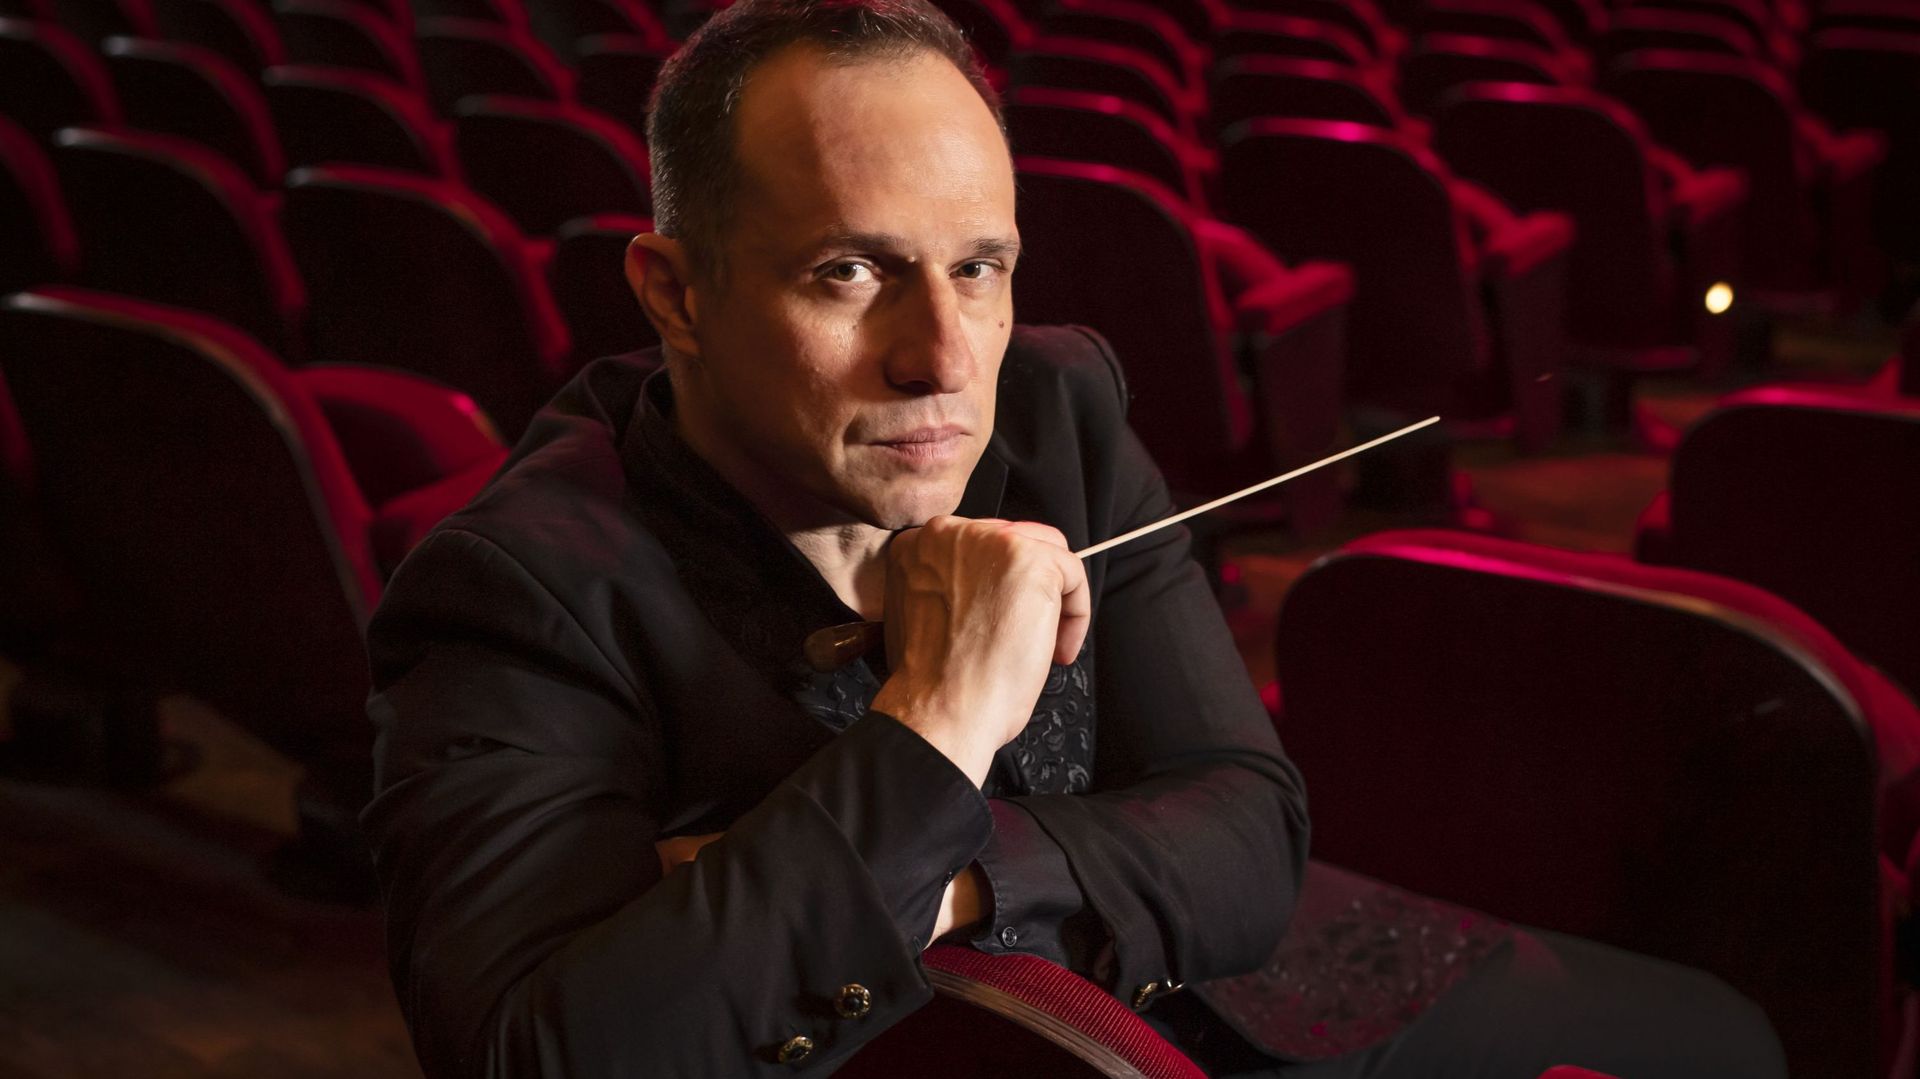 Giampaolo Bisanti, le nouveau Directeur Musical de l'Opéra Royal de Wallonie-Liège